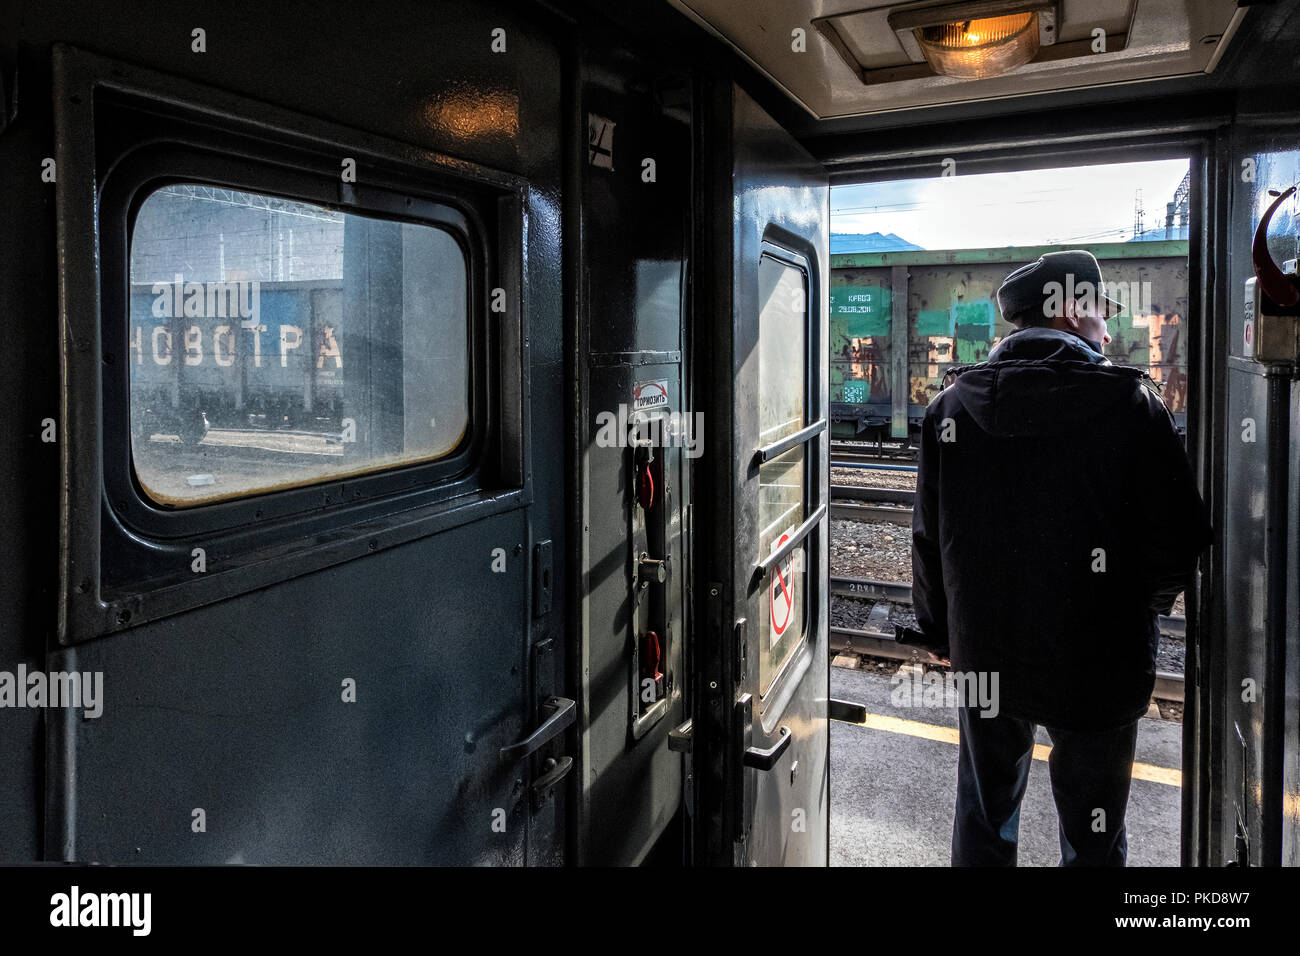 Trans Siberian Express, Sibirien, Russland - 20. März 2018: Train Attendant ist Kontrolle der Passagiere vor dem Abflug aus Nowosibirsk Bahnhof, Ru Stockfoto